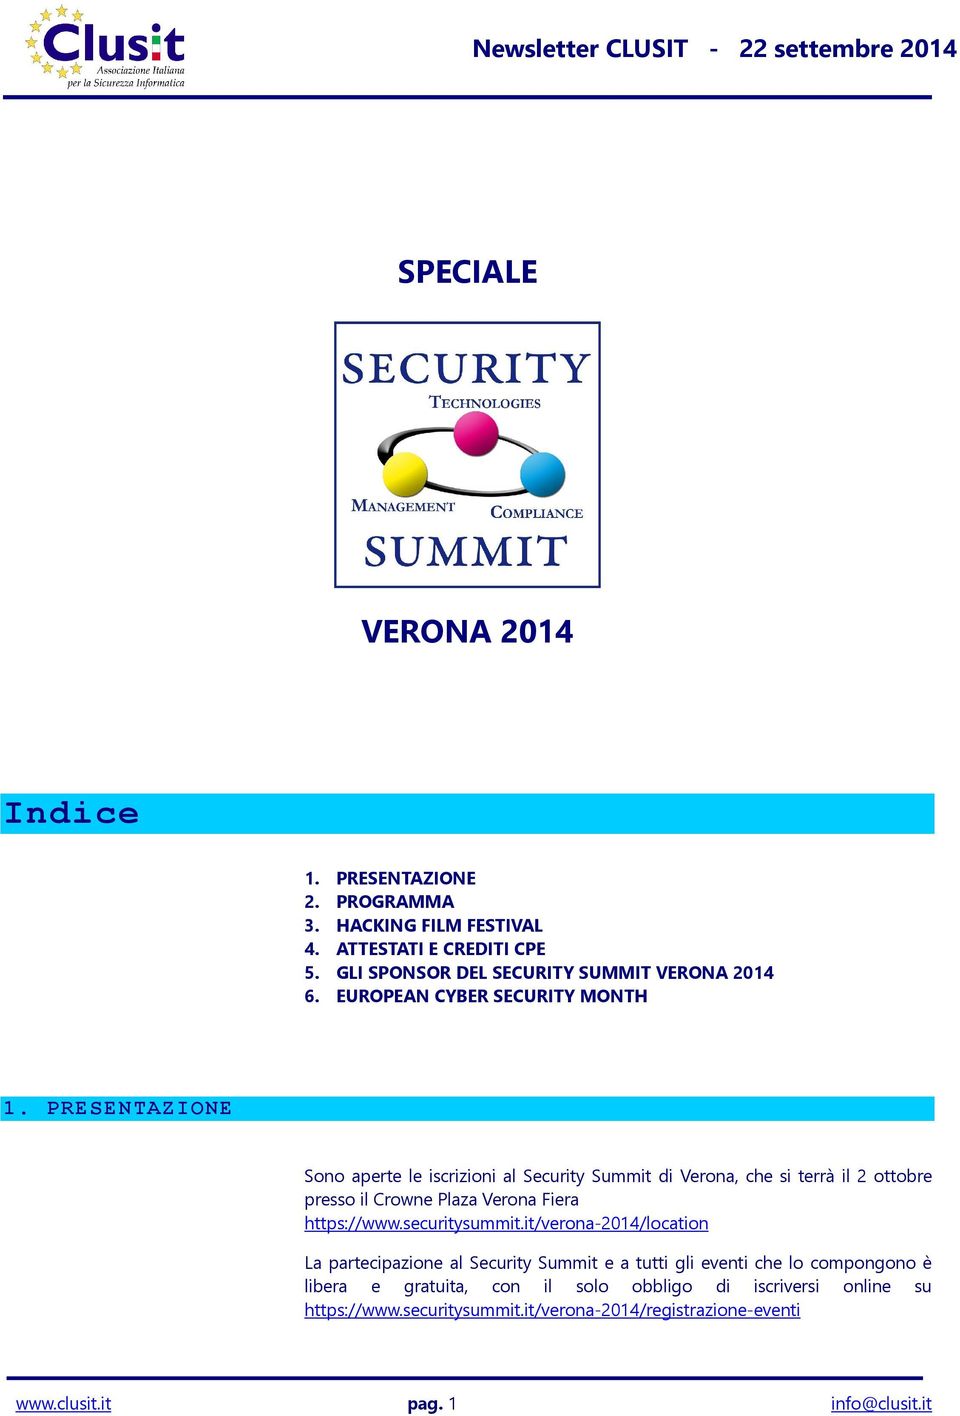 PRESENTAZIONE Sono aperte le iscrizioni al Security Summit di Verona, che si terrà il 2 ottobre presso il Crowne Plaza Verona Fiera https://www.